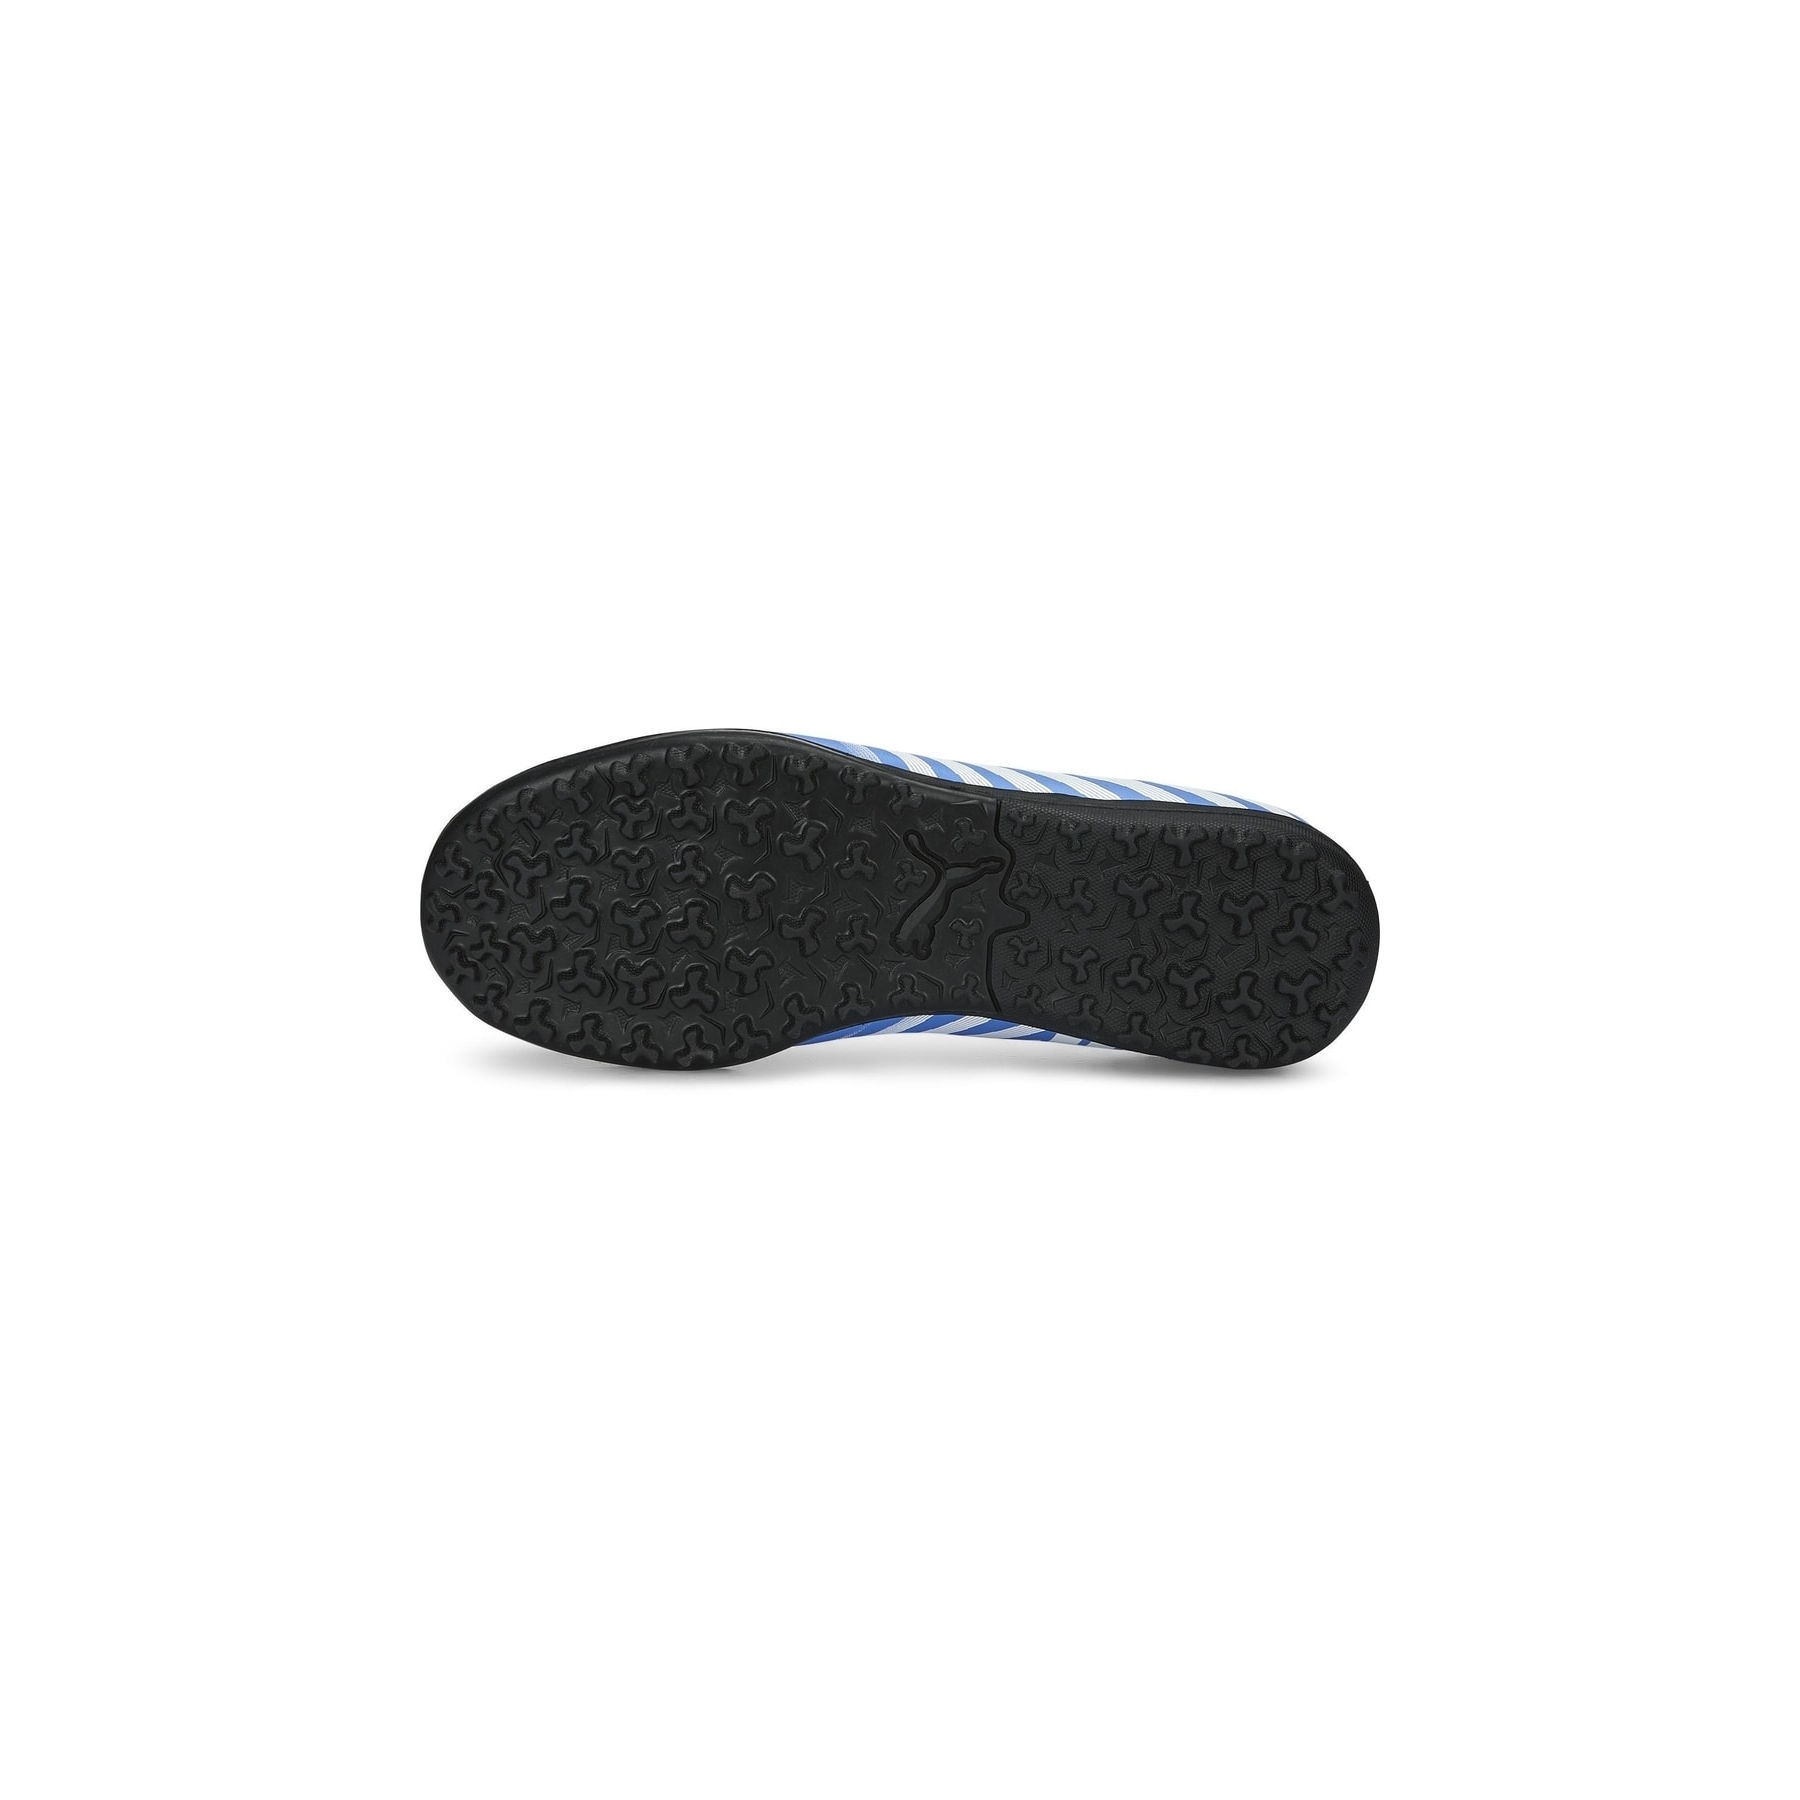 Tacto II Tt Mavi Halı Saha Ayakkabısı (106706-09)